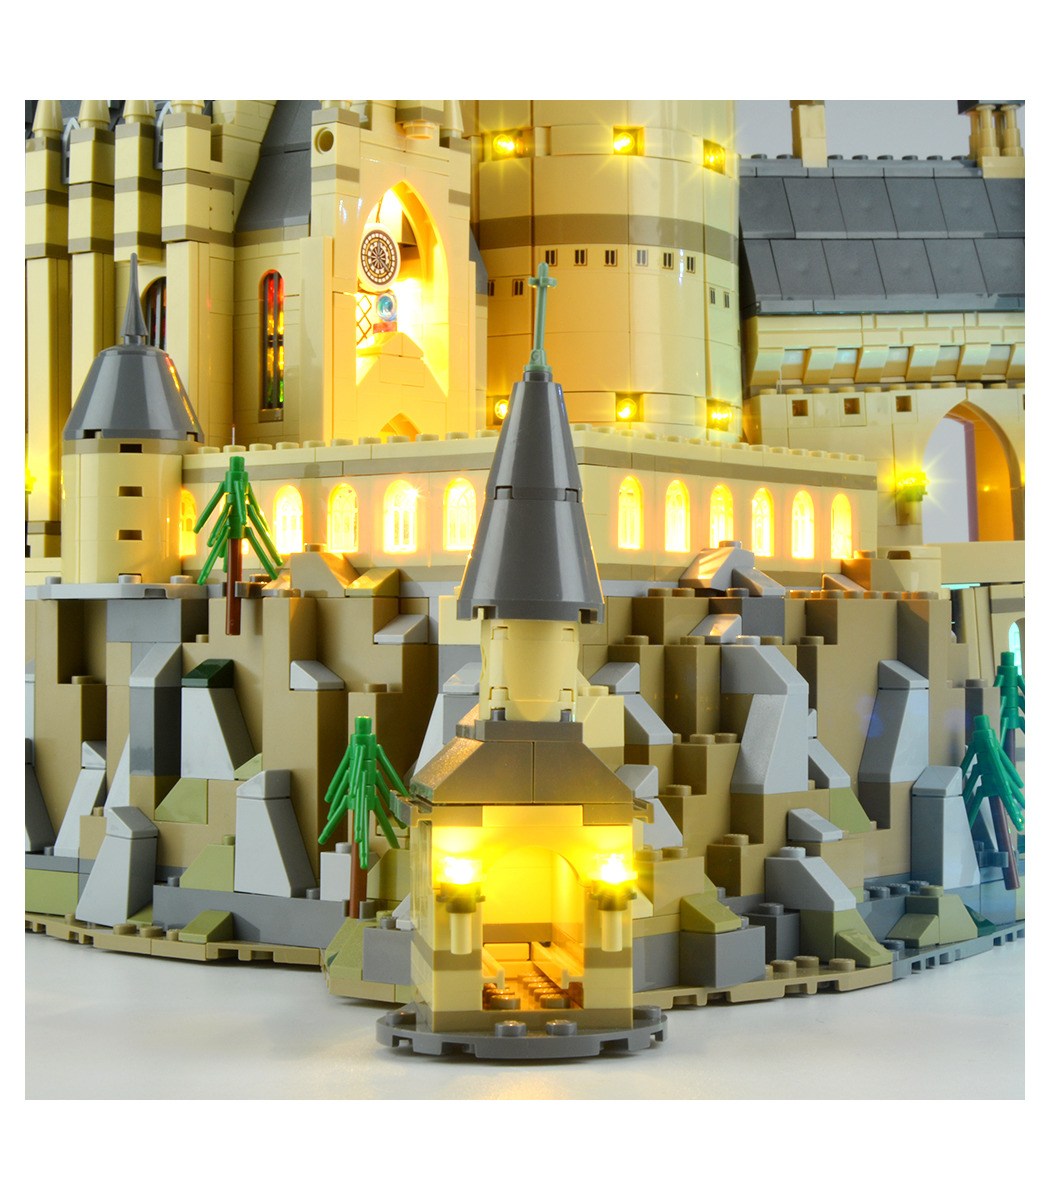 Juego De Harry Potter Hogwarts Castillo 16060-6,020 piezas Reino Unido vendedor 